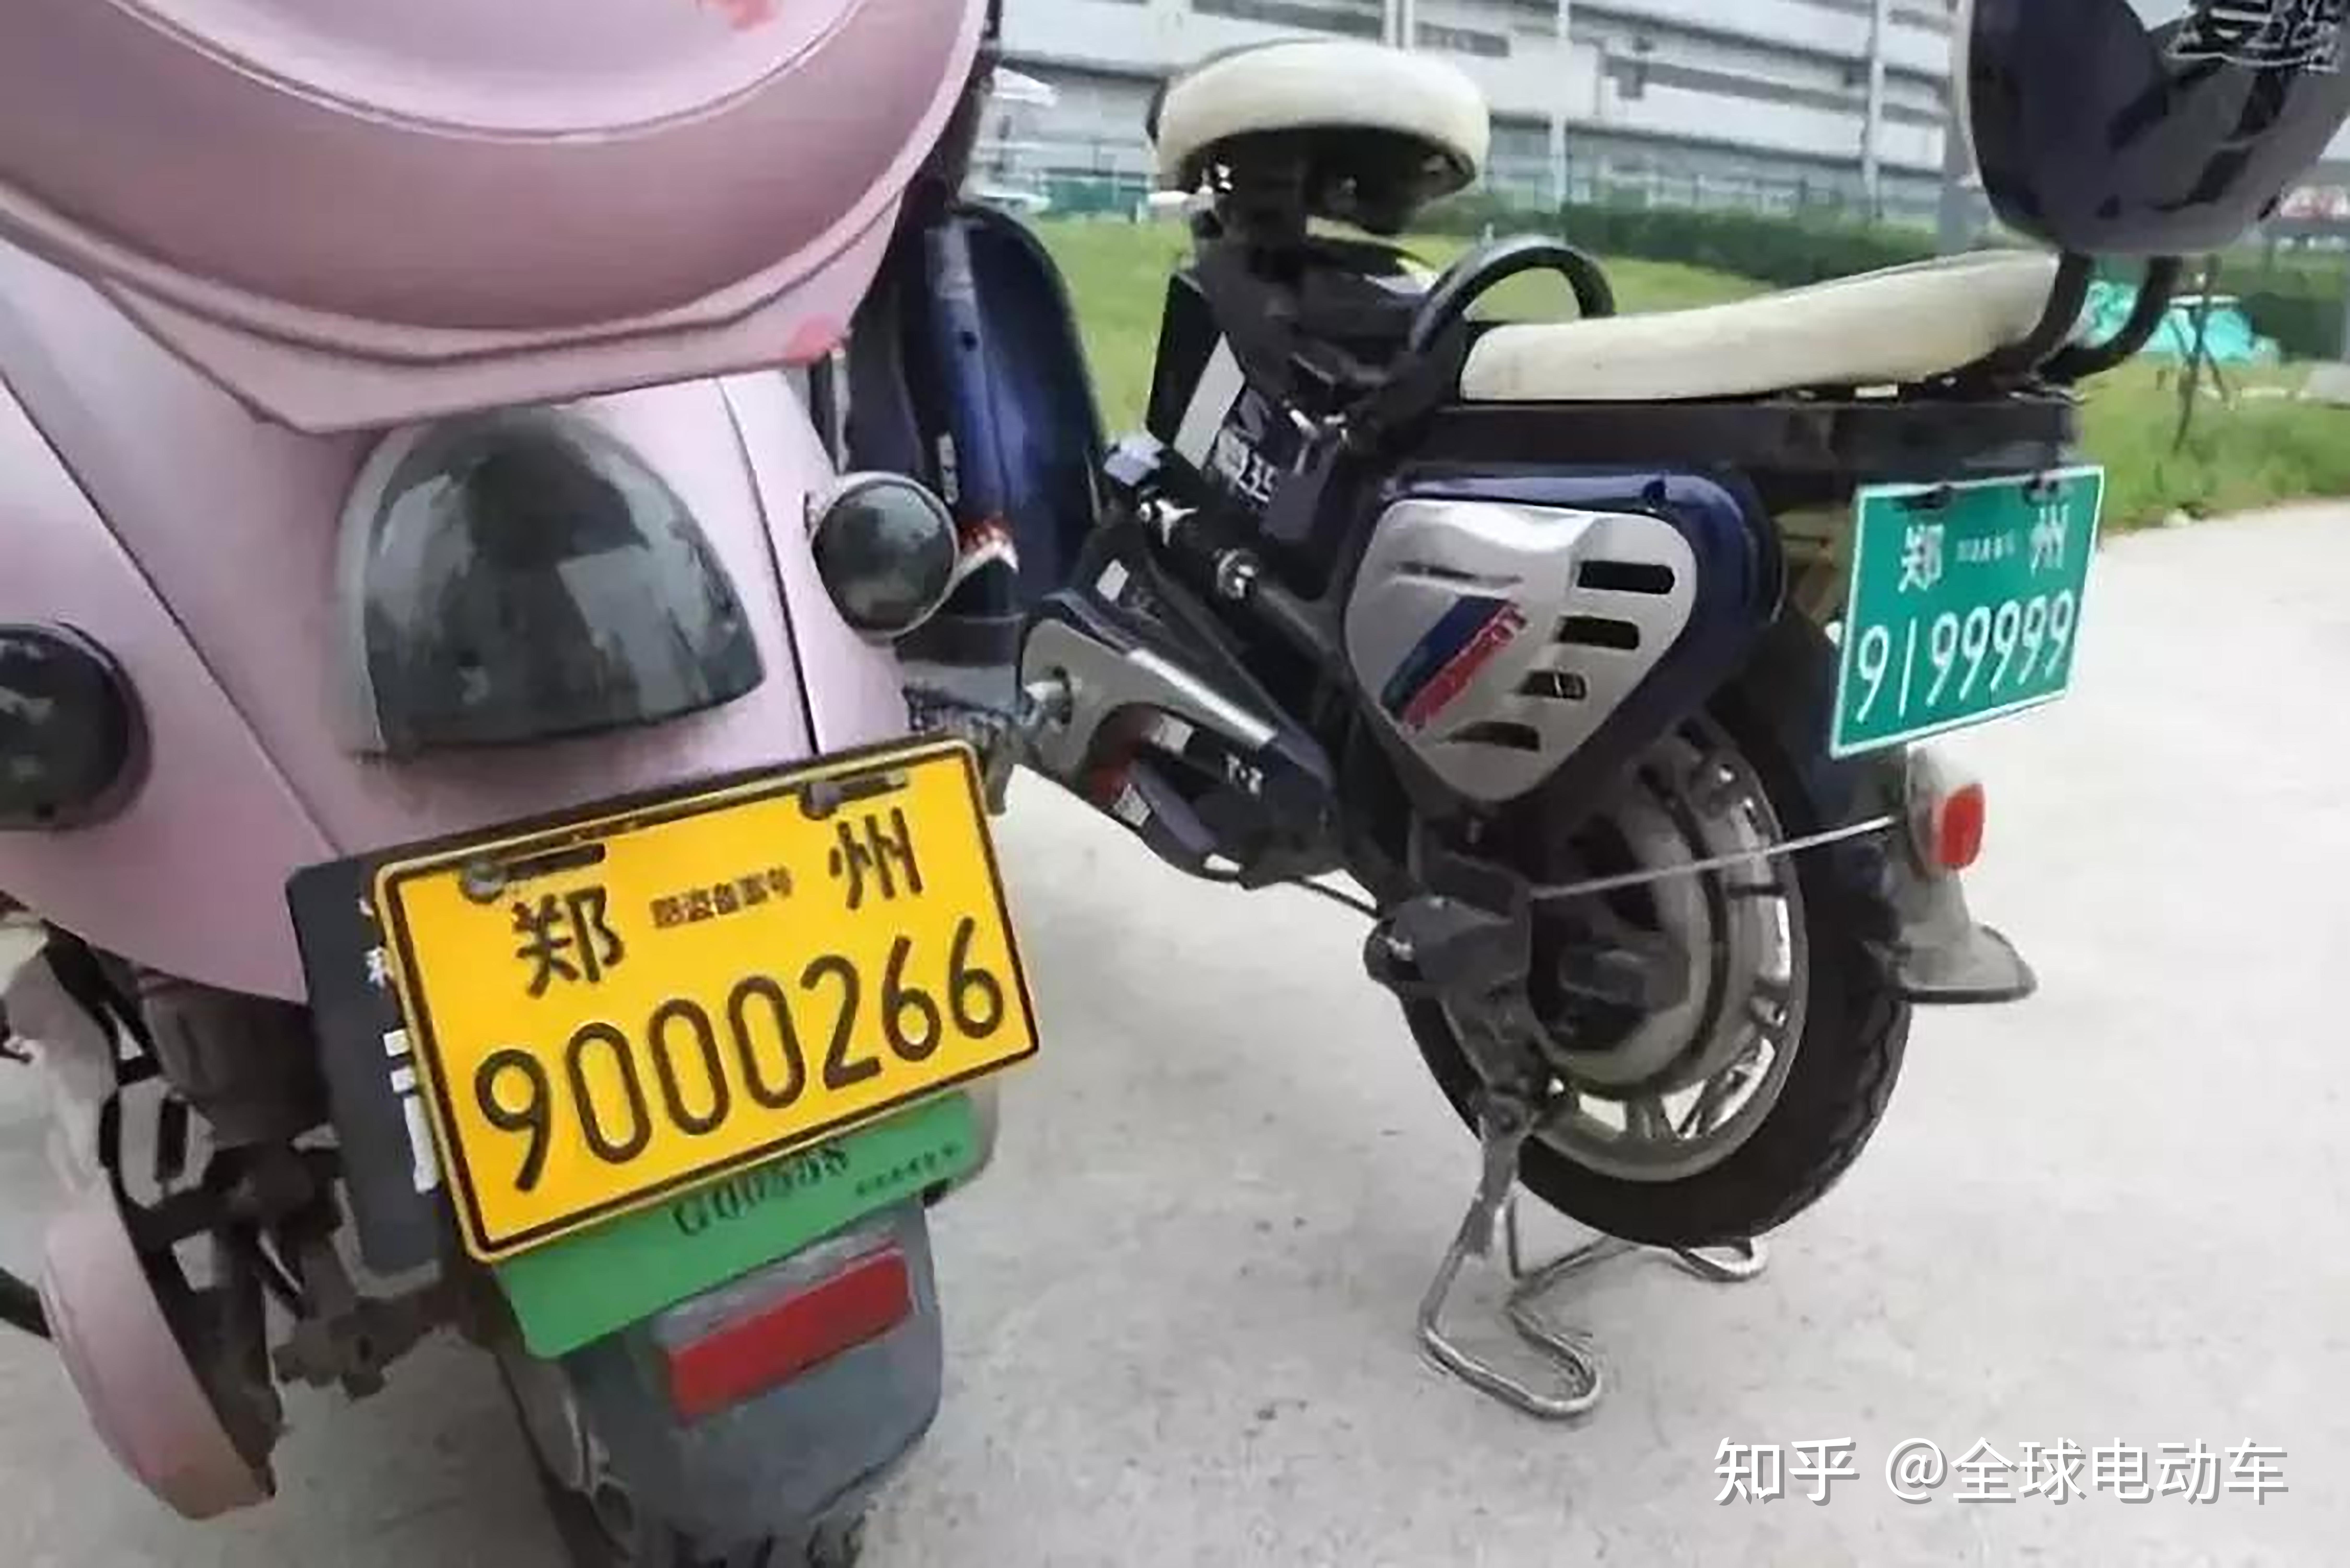 也就是绿牌,这个是不需要驾照的,但电动摩托车和电动轻便摩托车